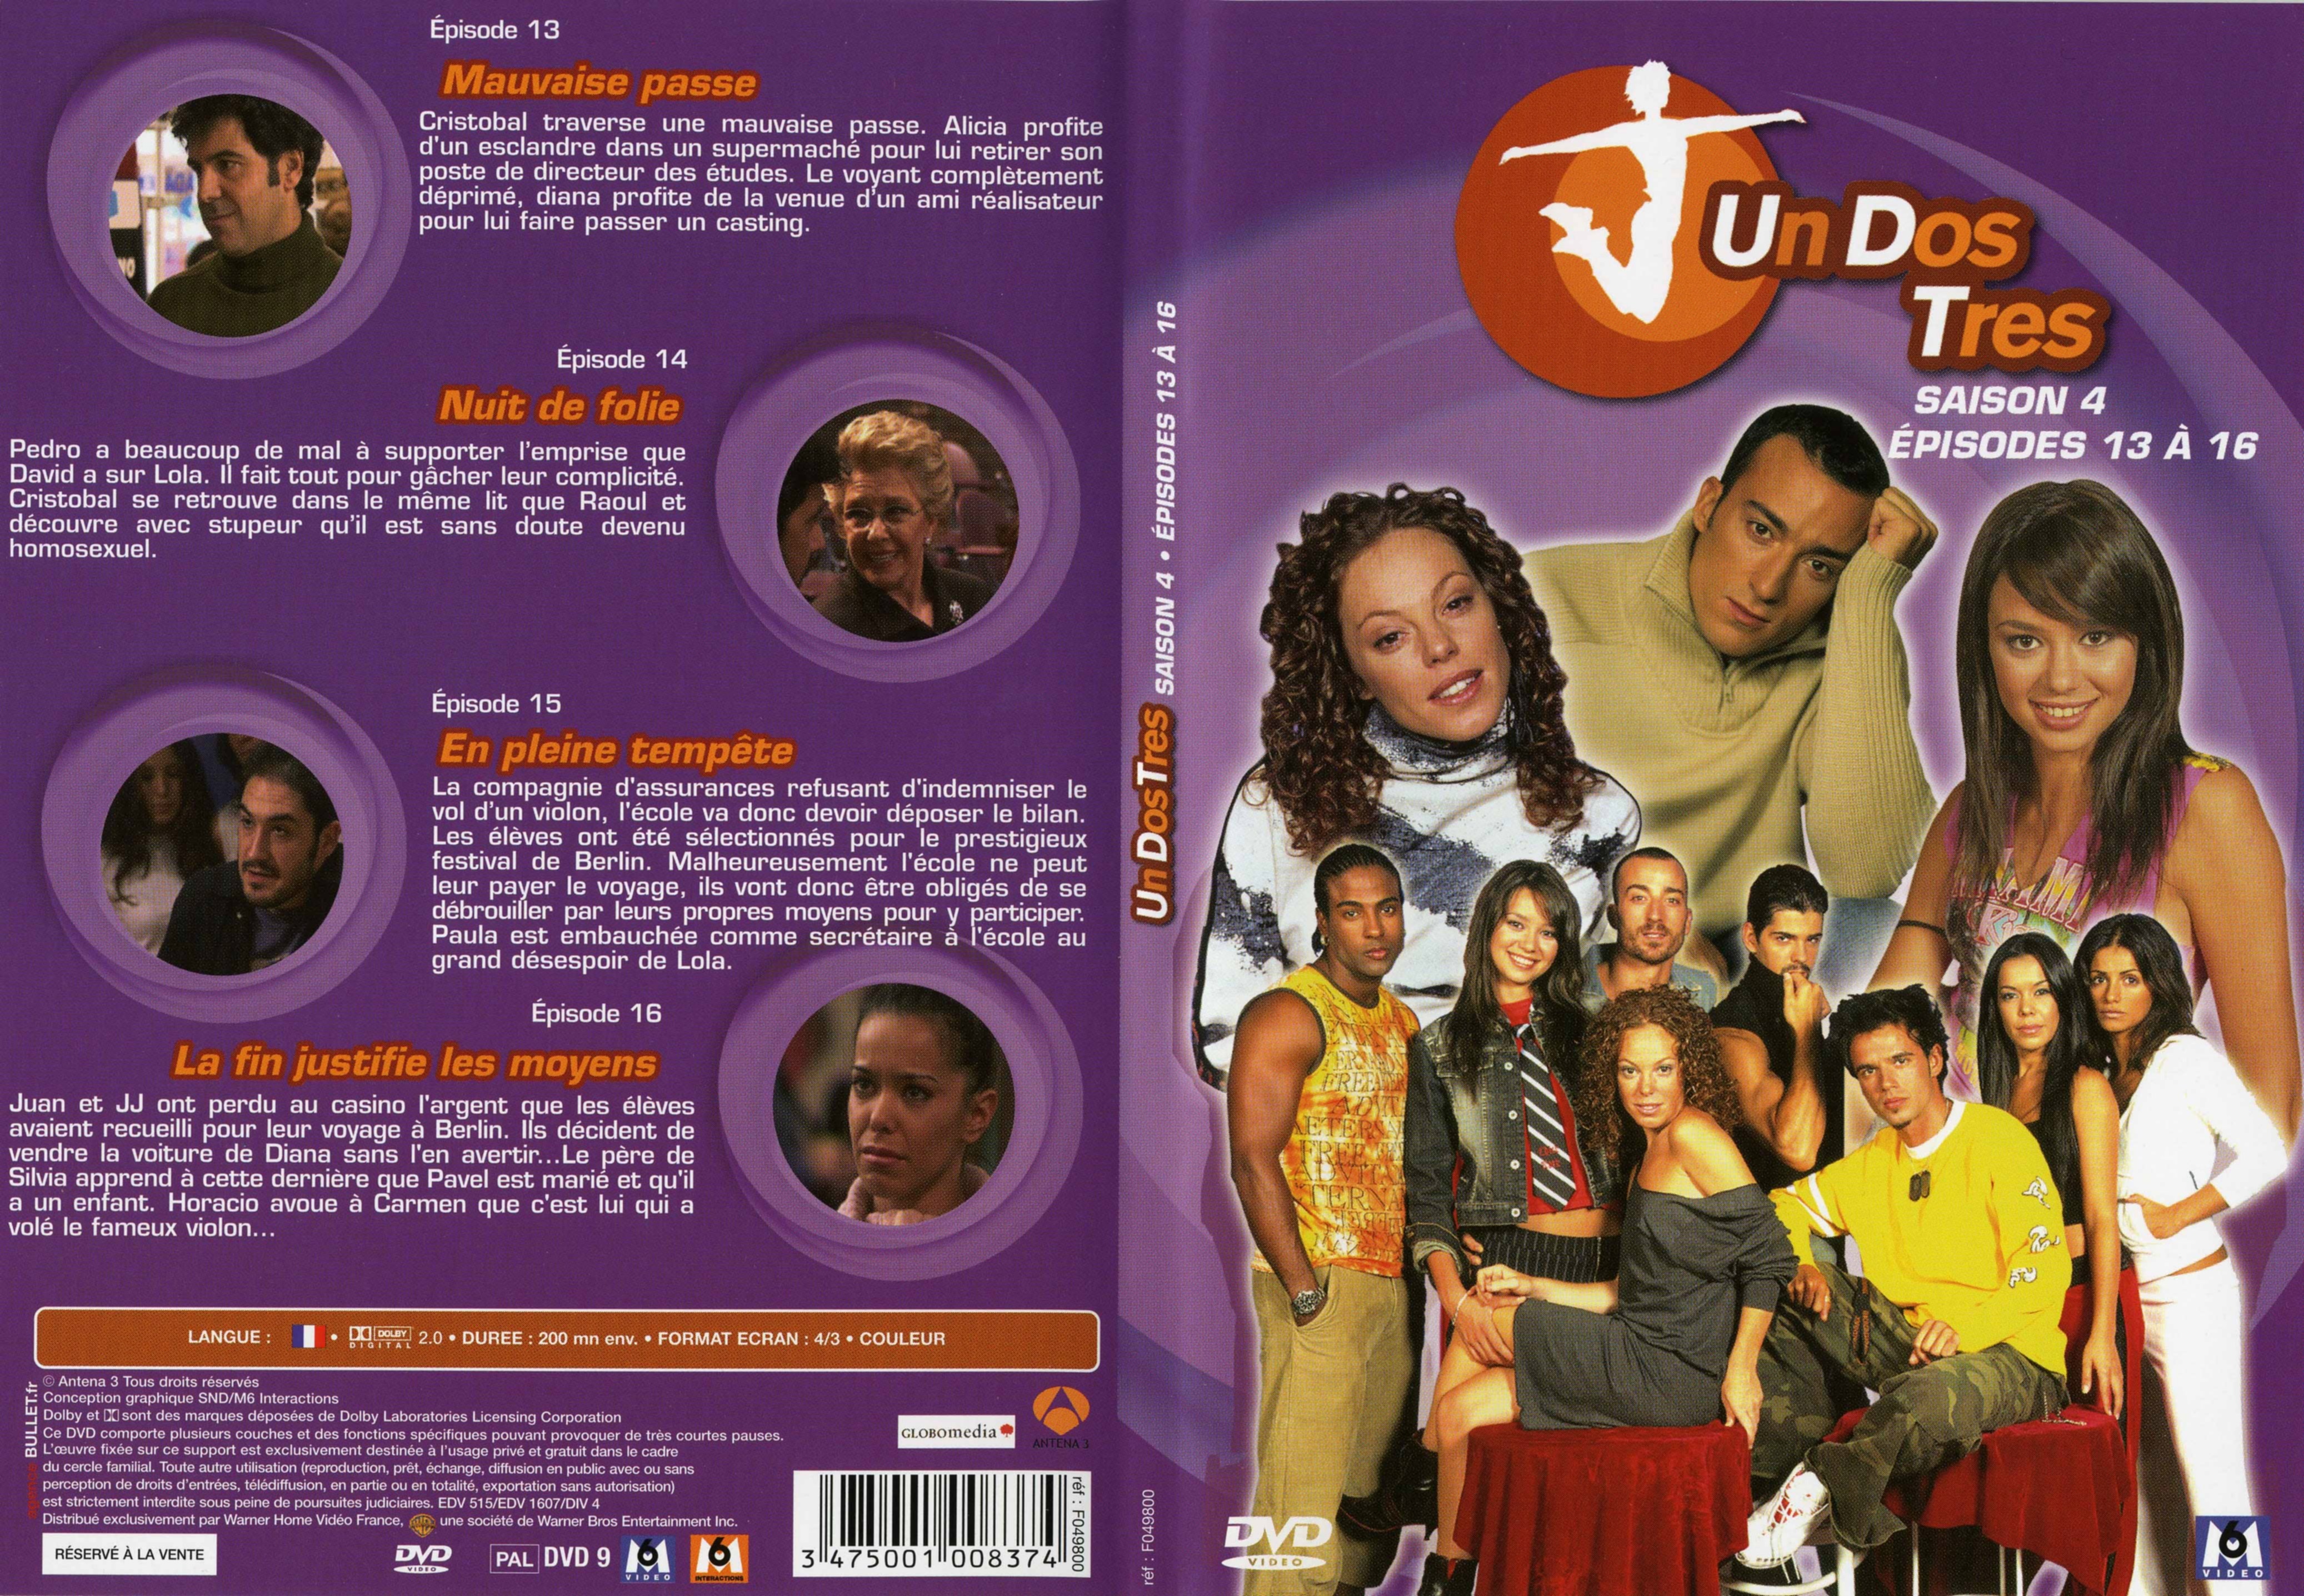 Jaquette DVD Un dos tres Saison 4 DVD 4